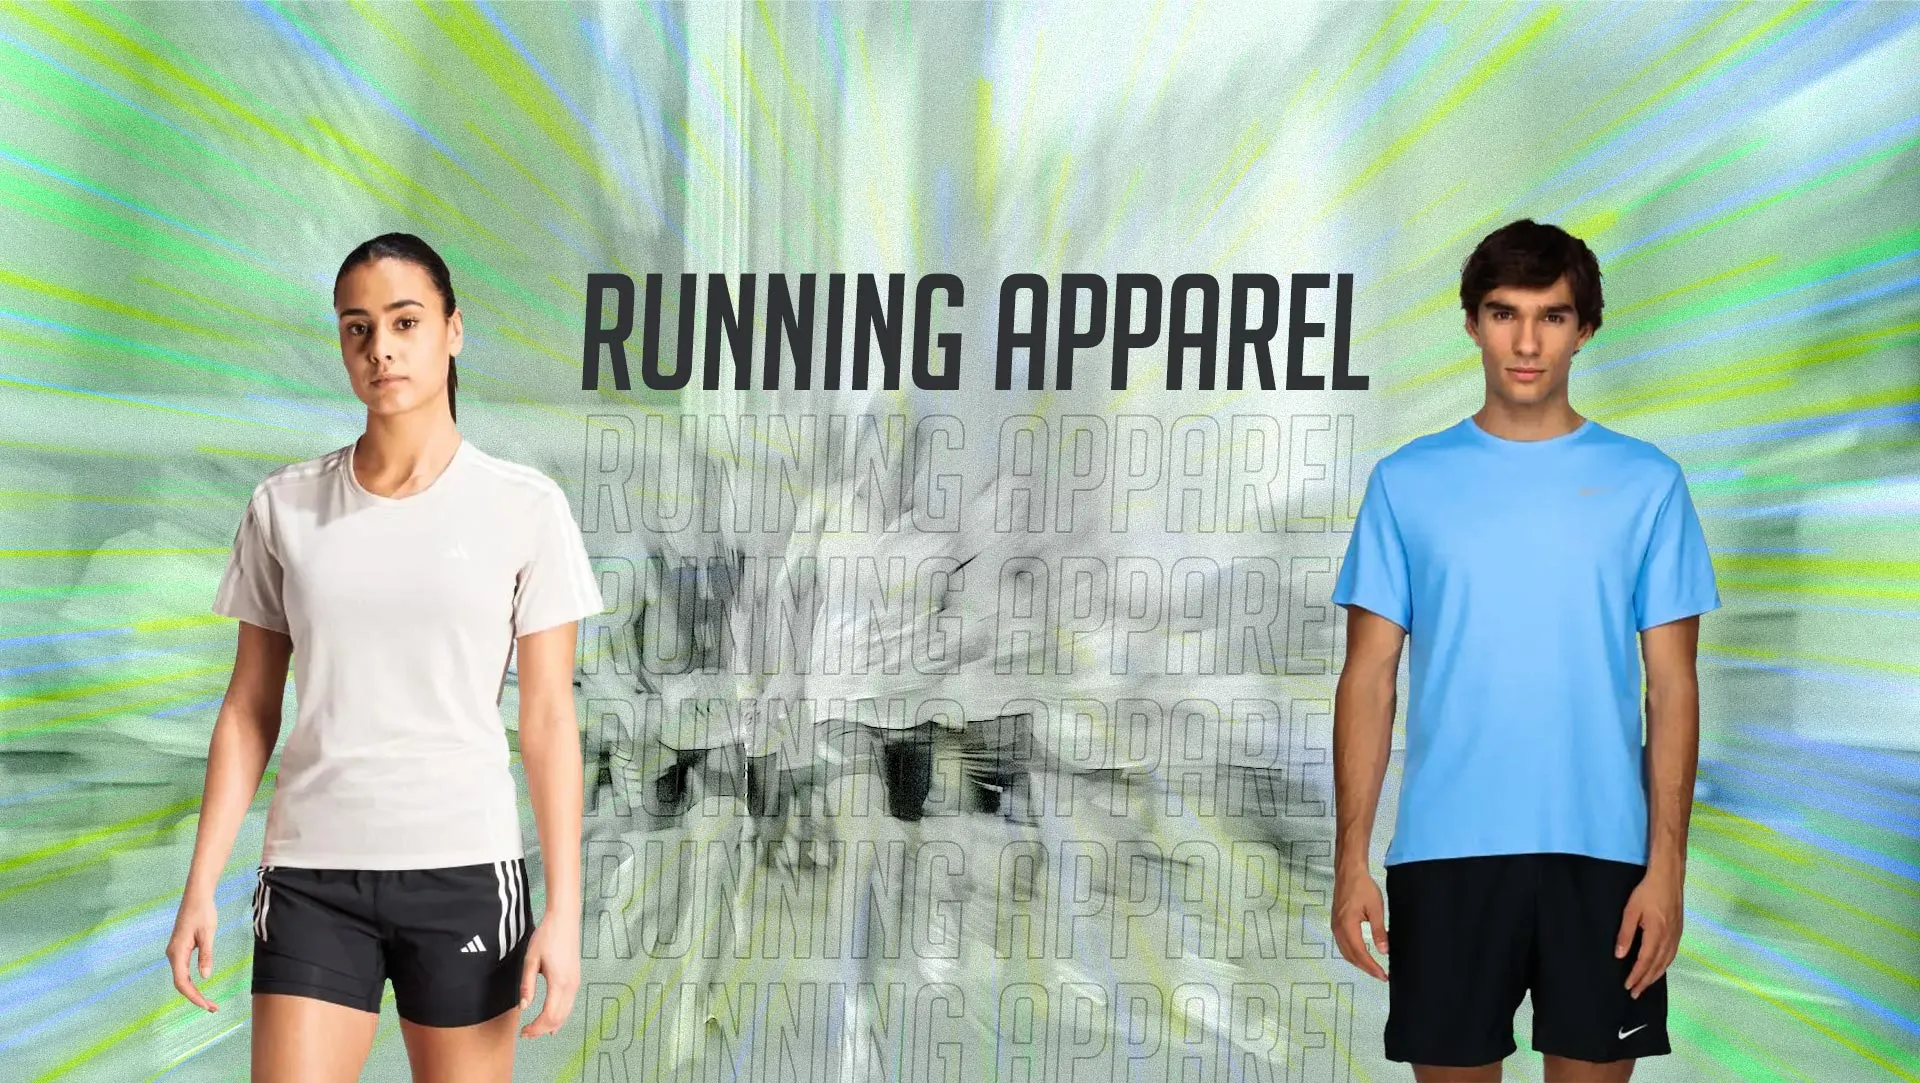 Running apparel